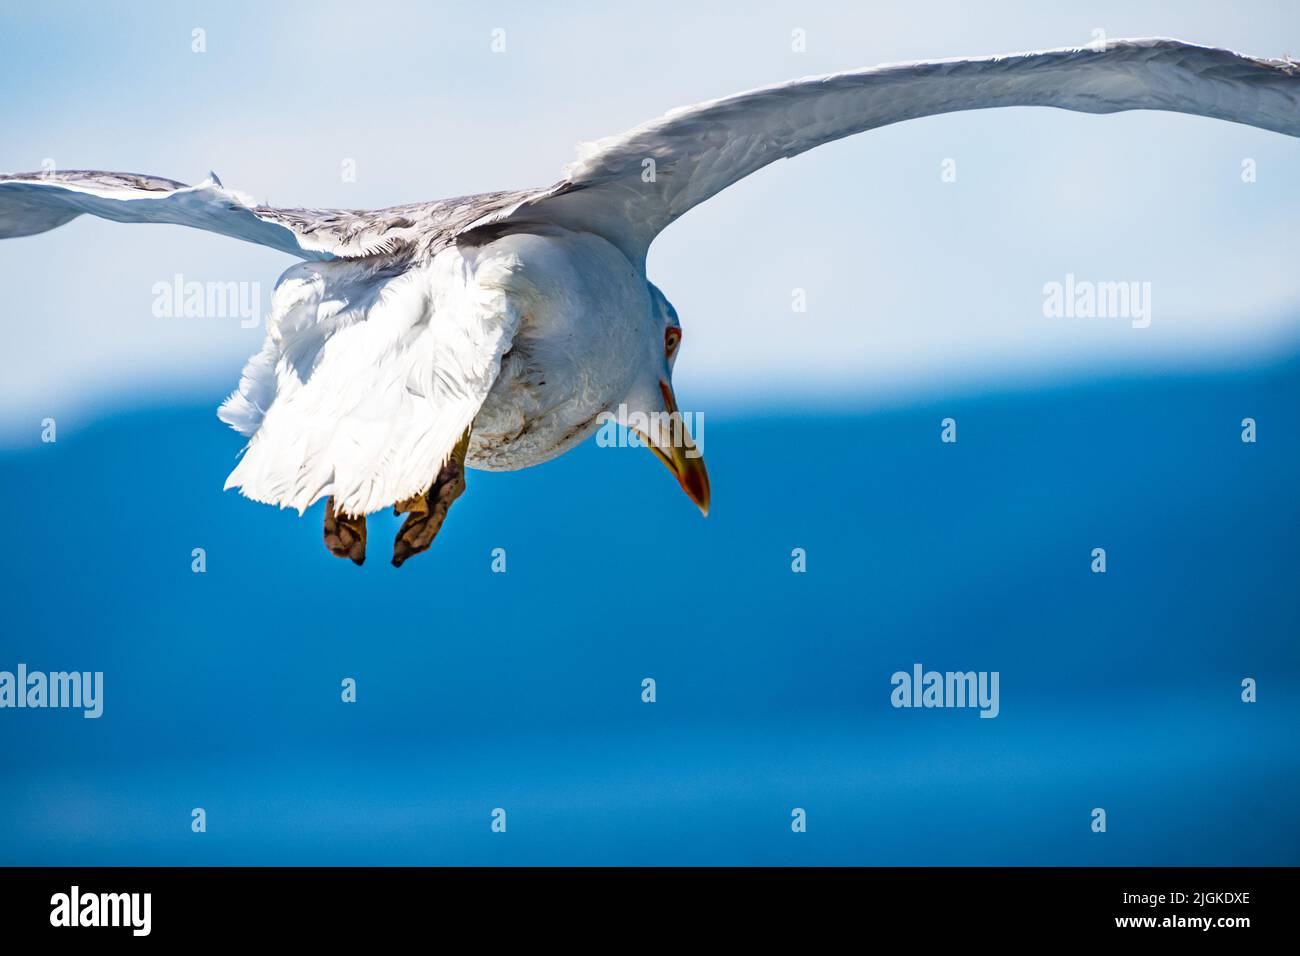 Nahaufnahme einer fliegenden Möwe gegen einen tiefblauen Himmel während der Sommermonate. Stockfoto